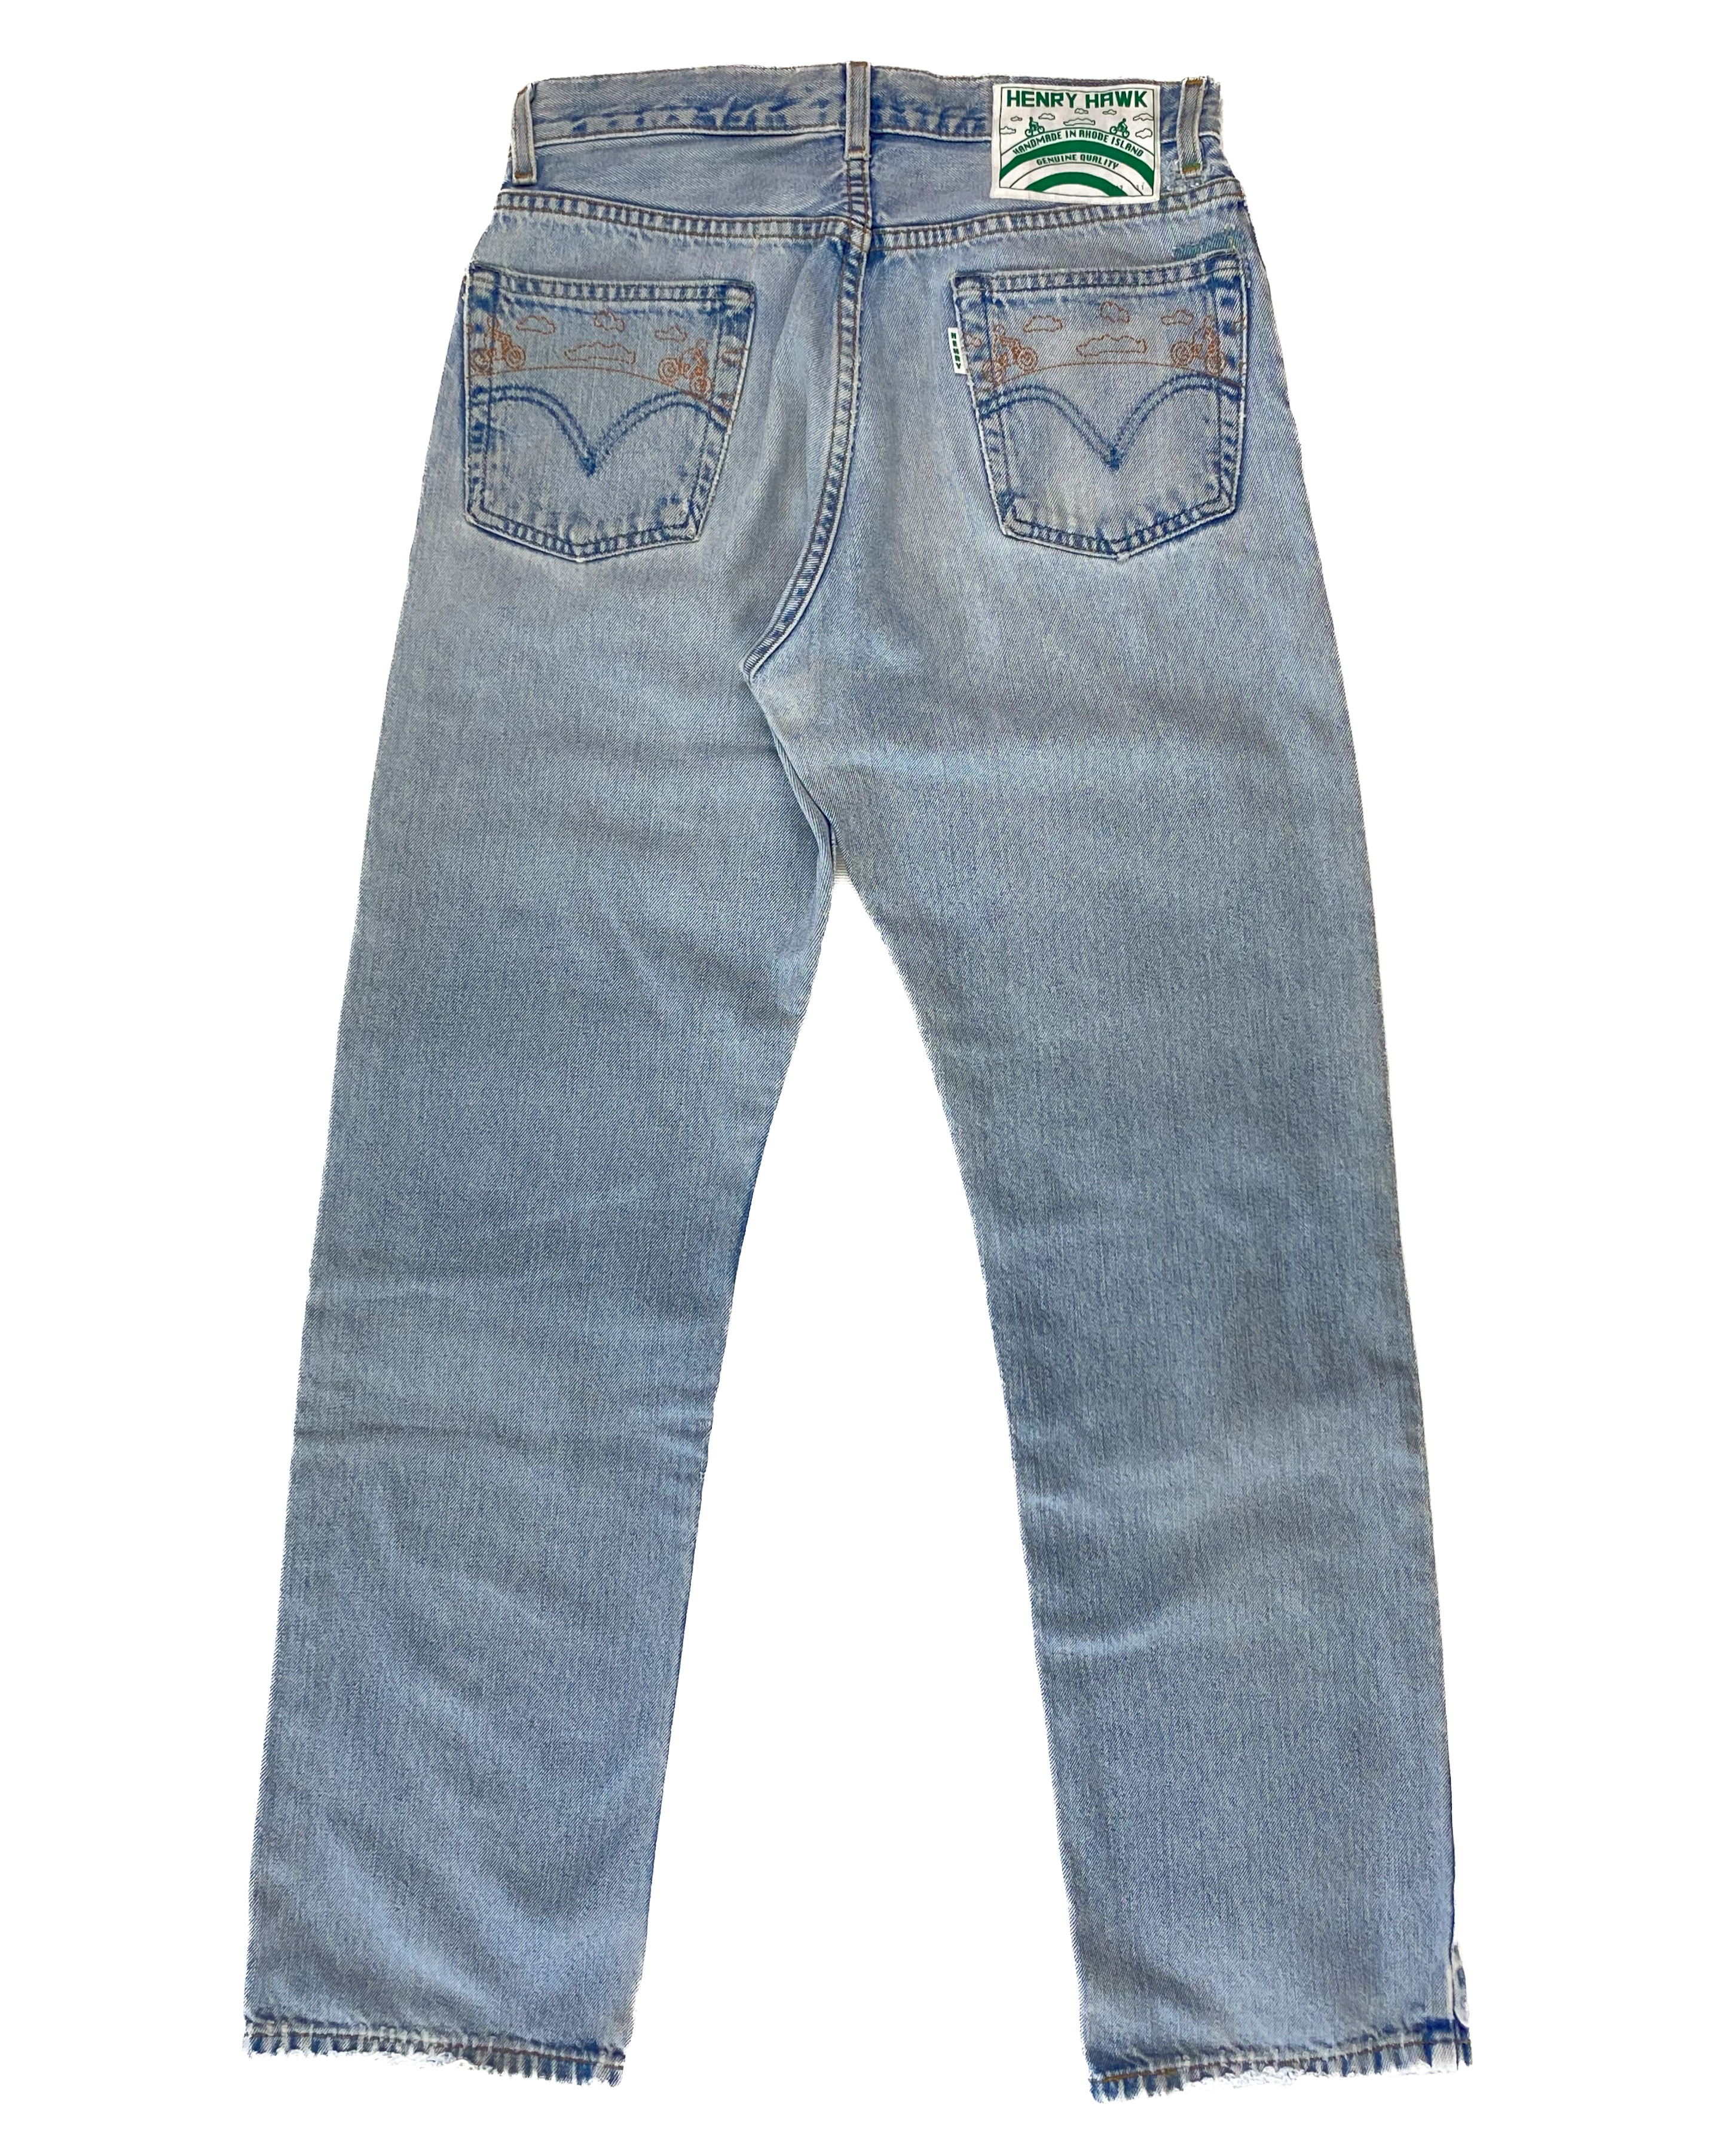 Refurbished jeans Henry Hawk SHOP 